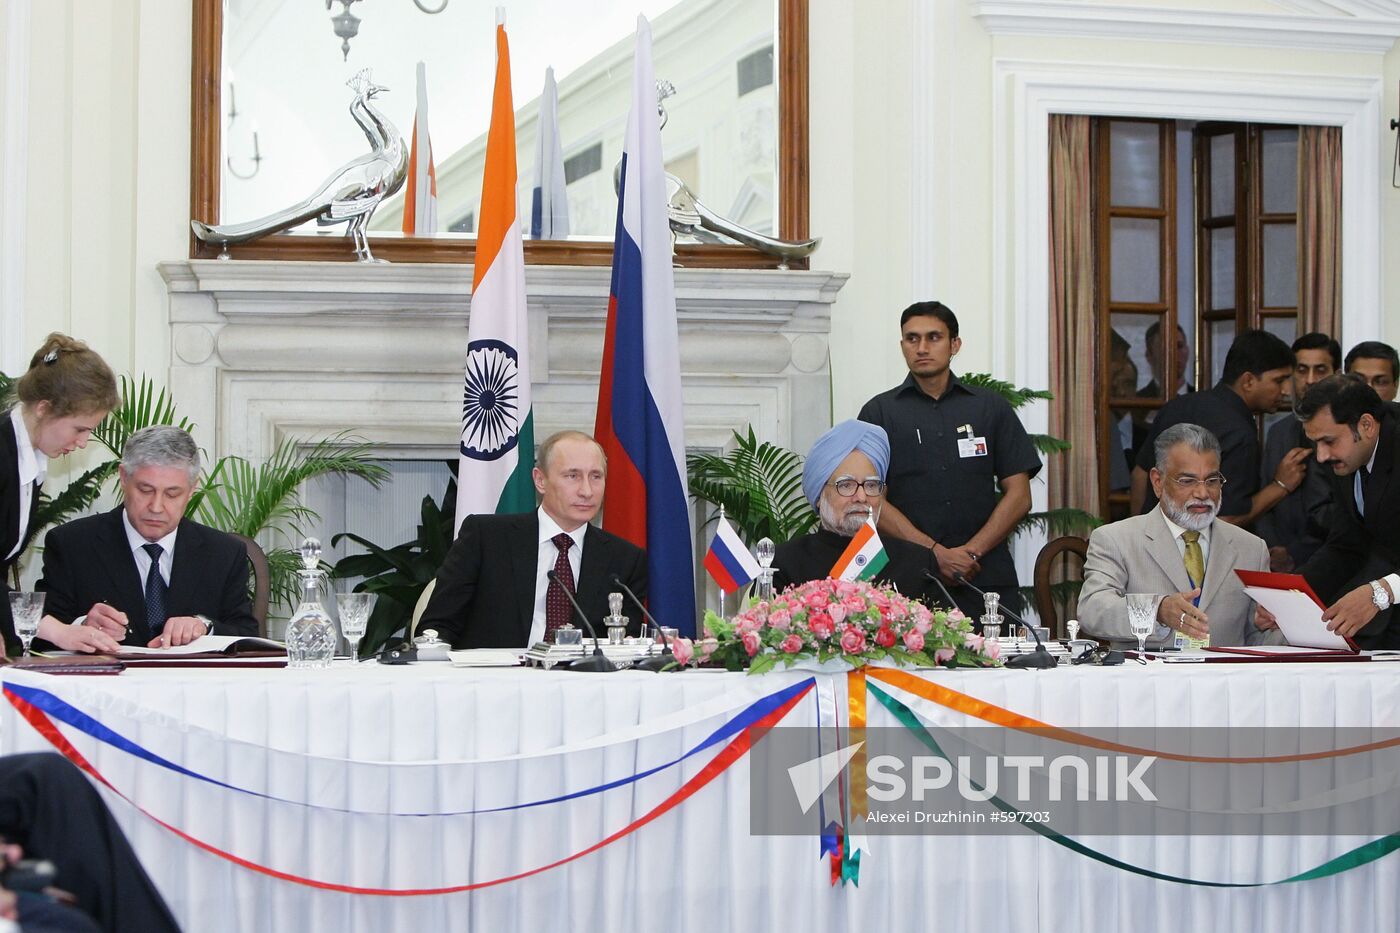 Vladimir Putin pays working visit to Republic of India